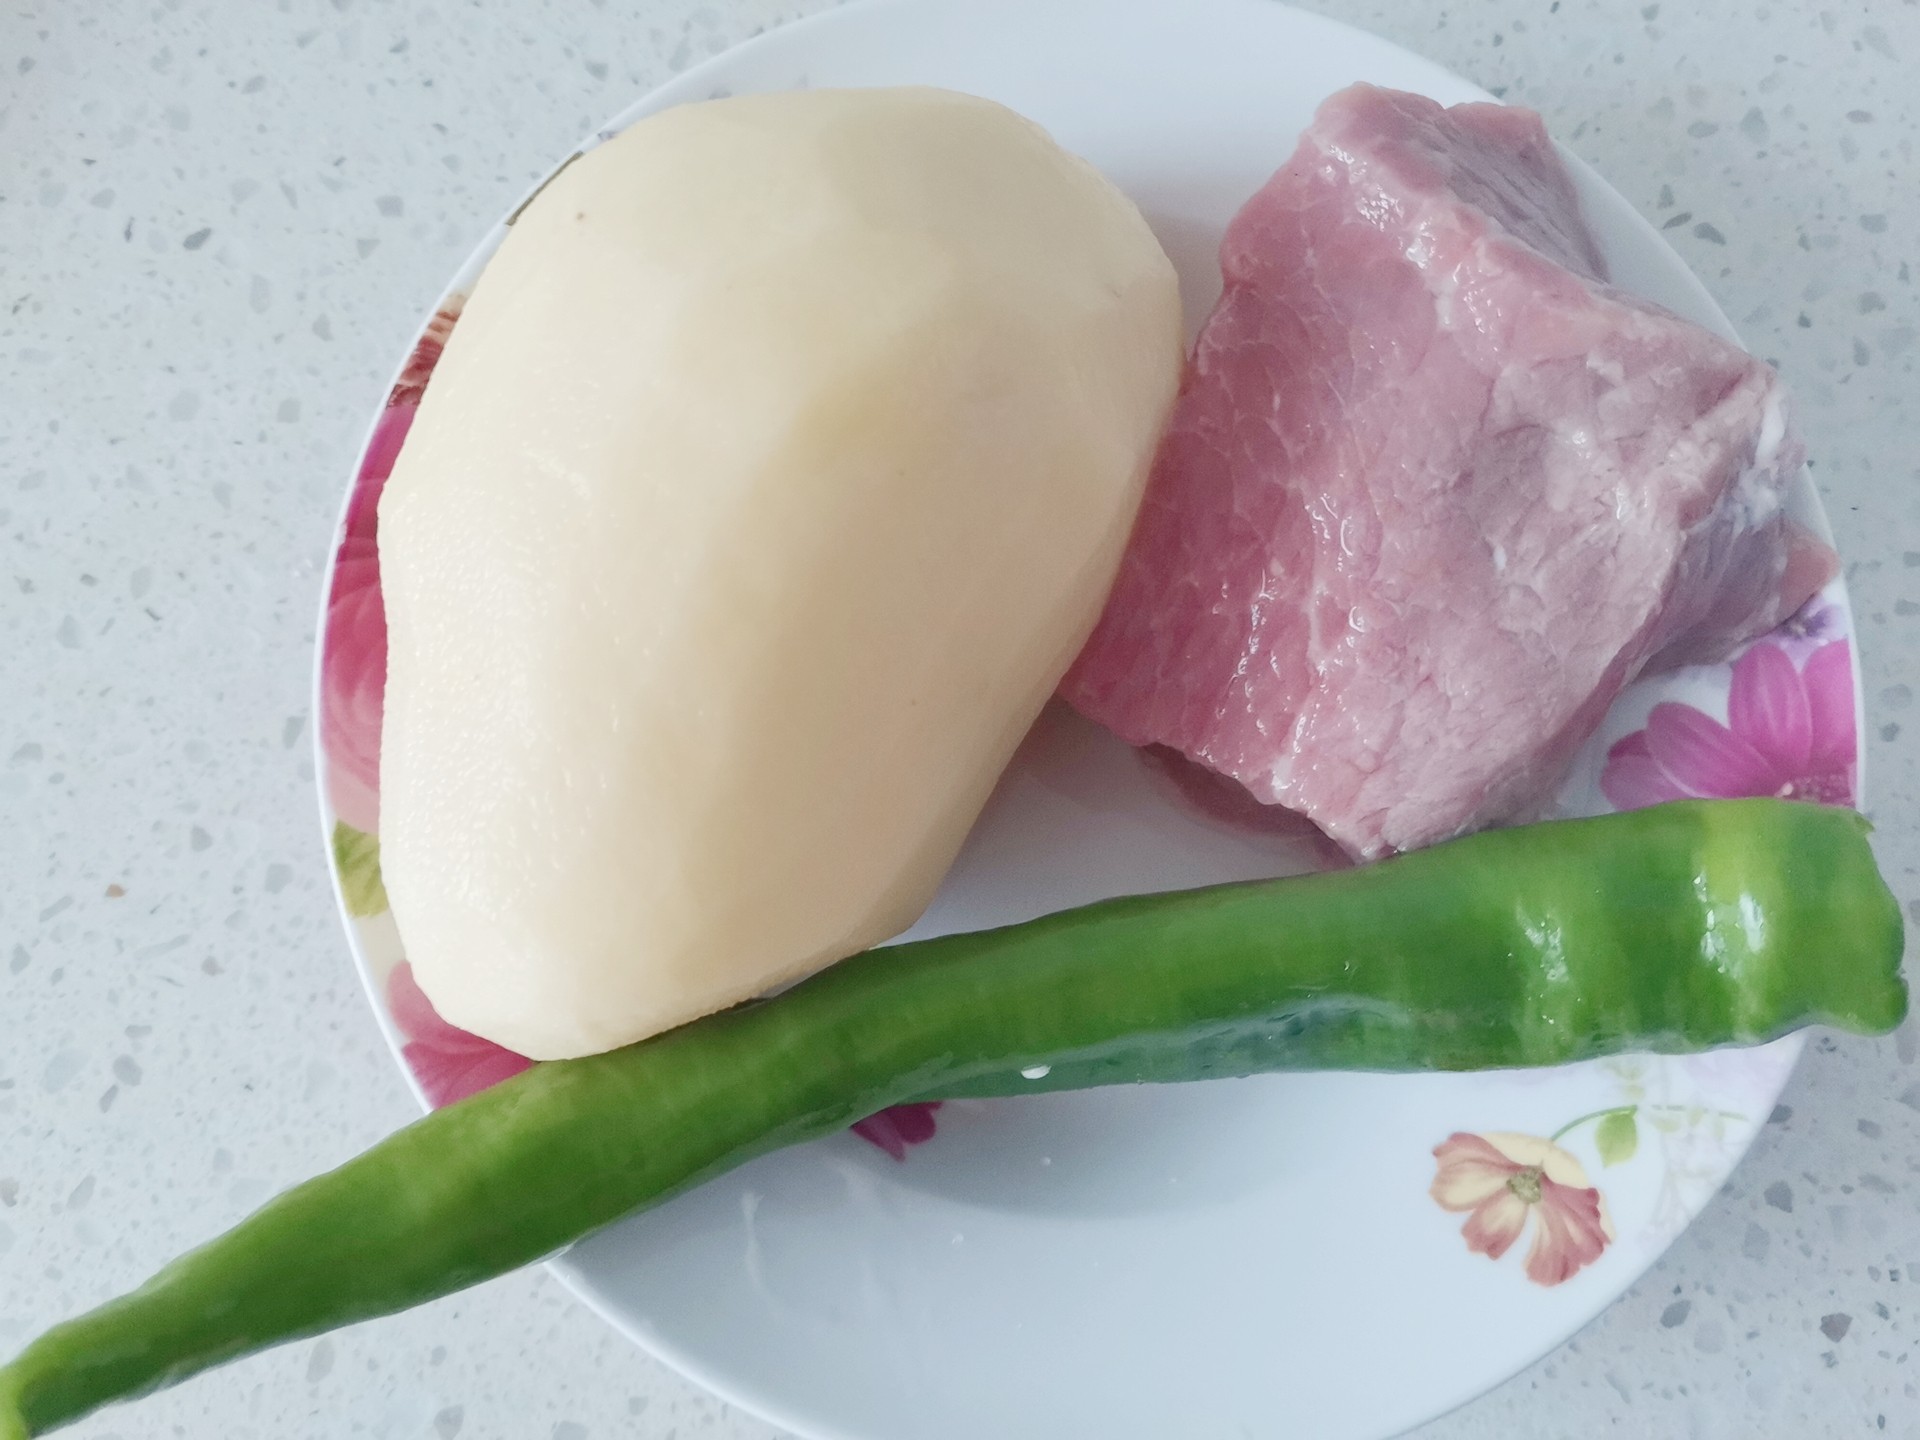 Stir-fried Pork with Green Pepper and Potato recipe